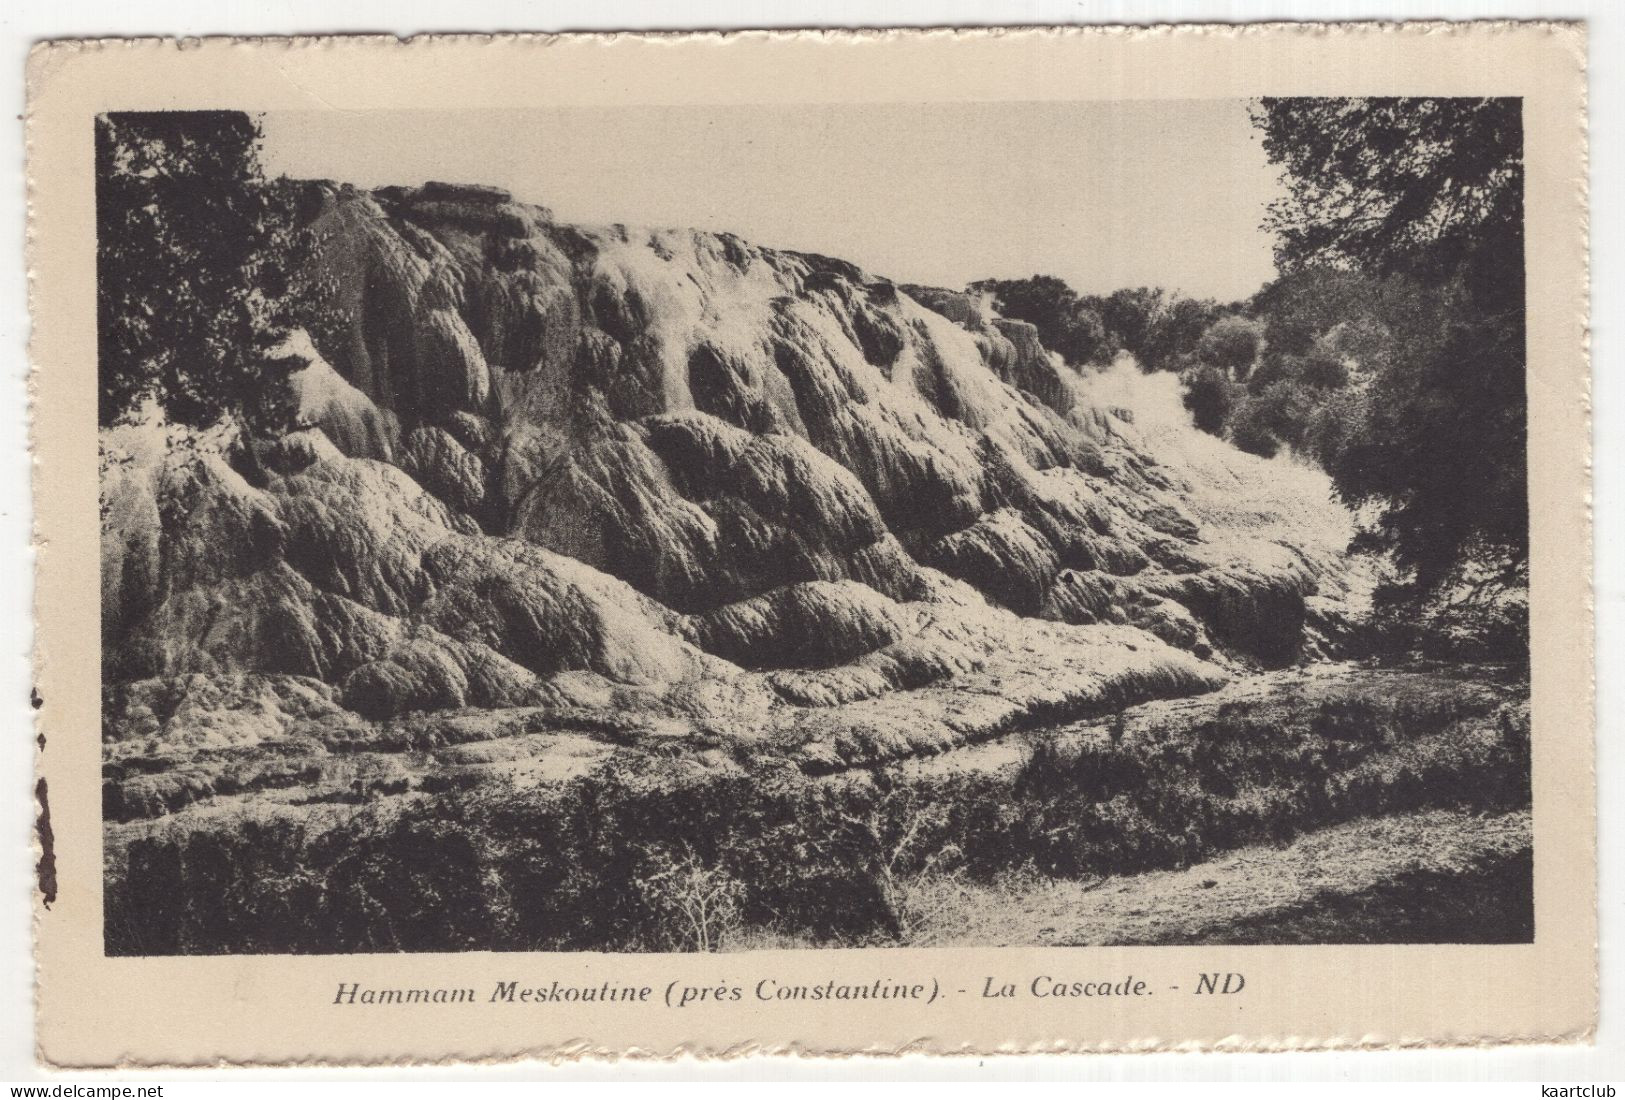 Hammam Meskoutine (près Constantine) - La Cascade. - ND - (l'Algérie) - 1930 - Konstantinopel